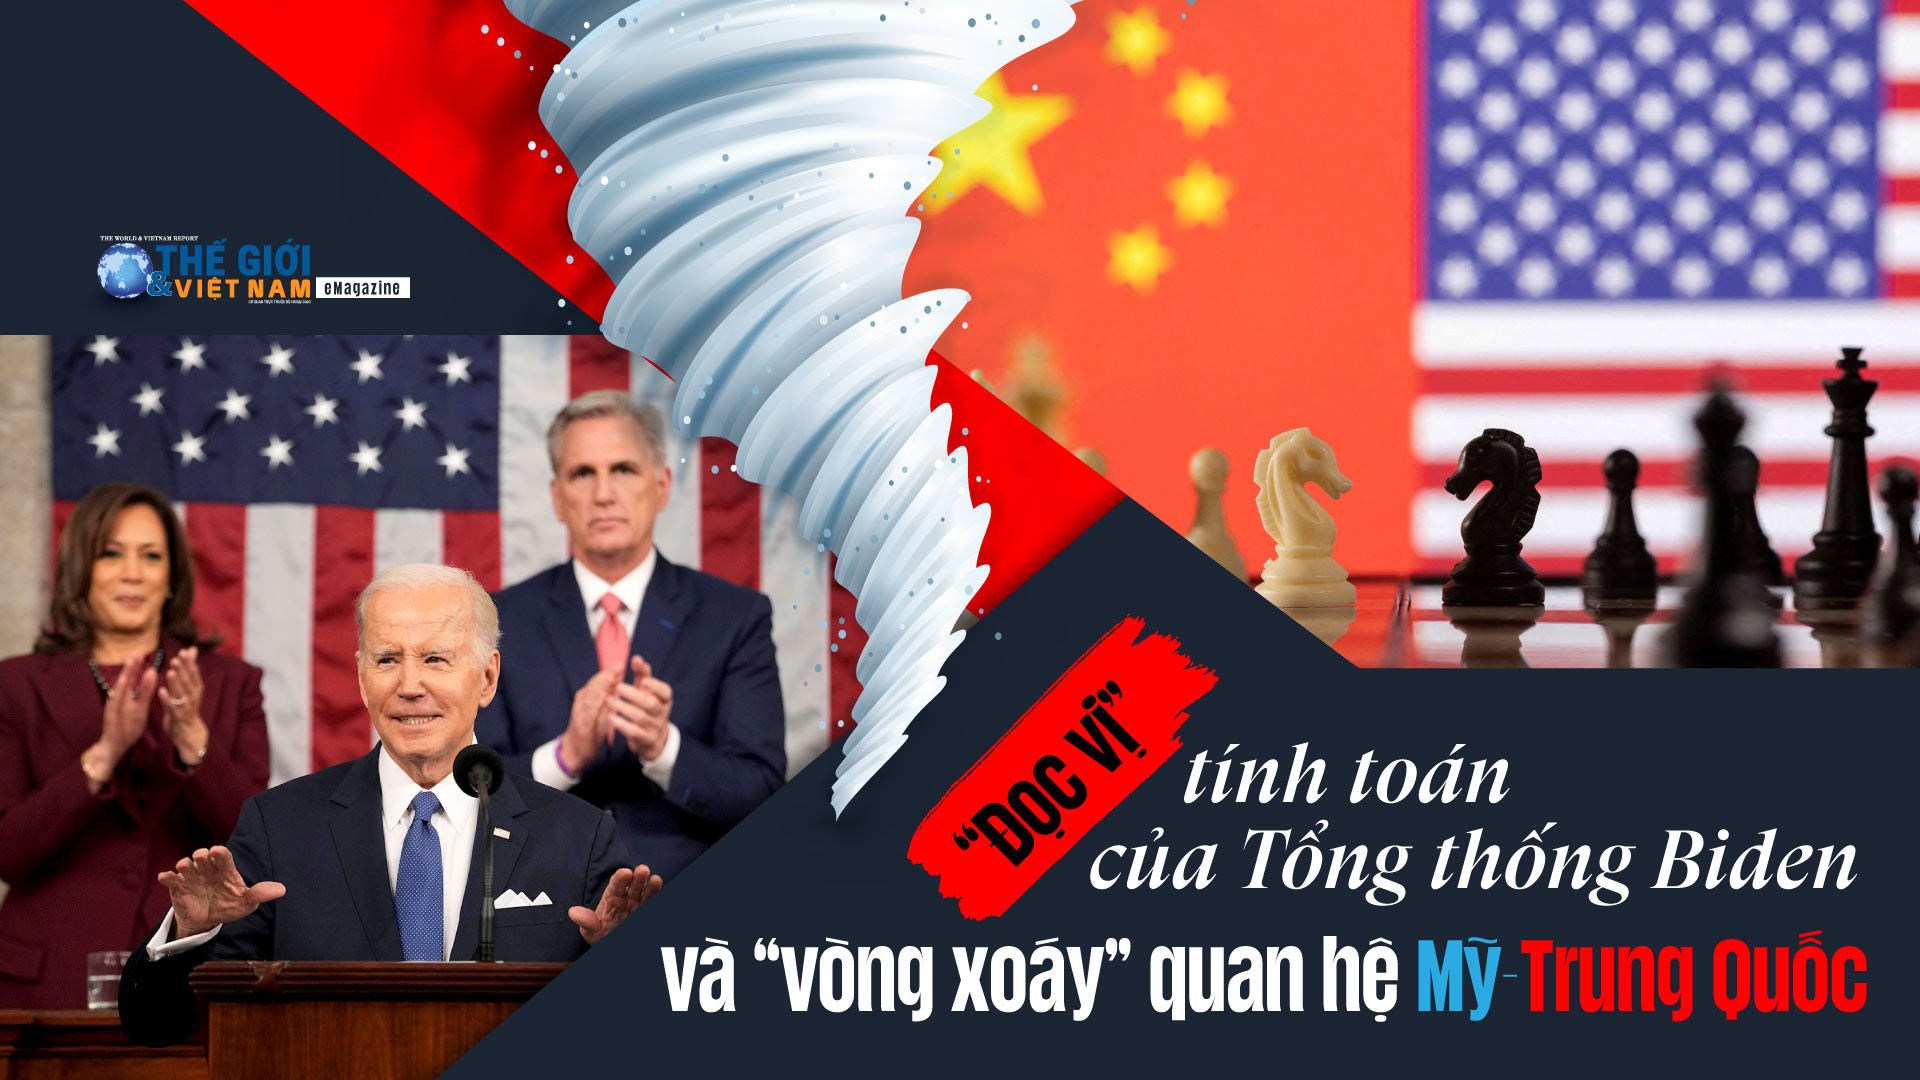 “Đọc vị” tính toán của Tổng thống Biden và “vòng xoáy” quan hệ Mỹ-Trung Quốc